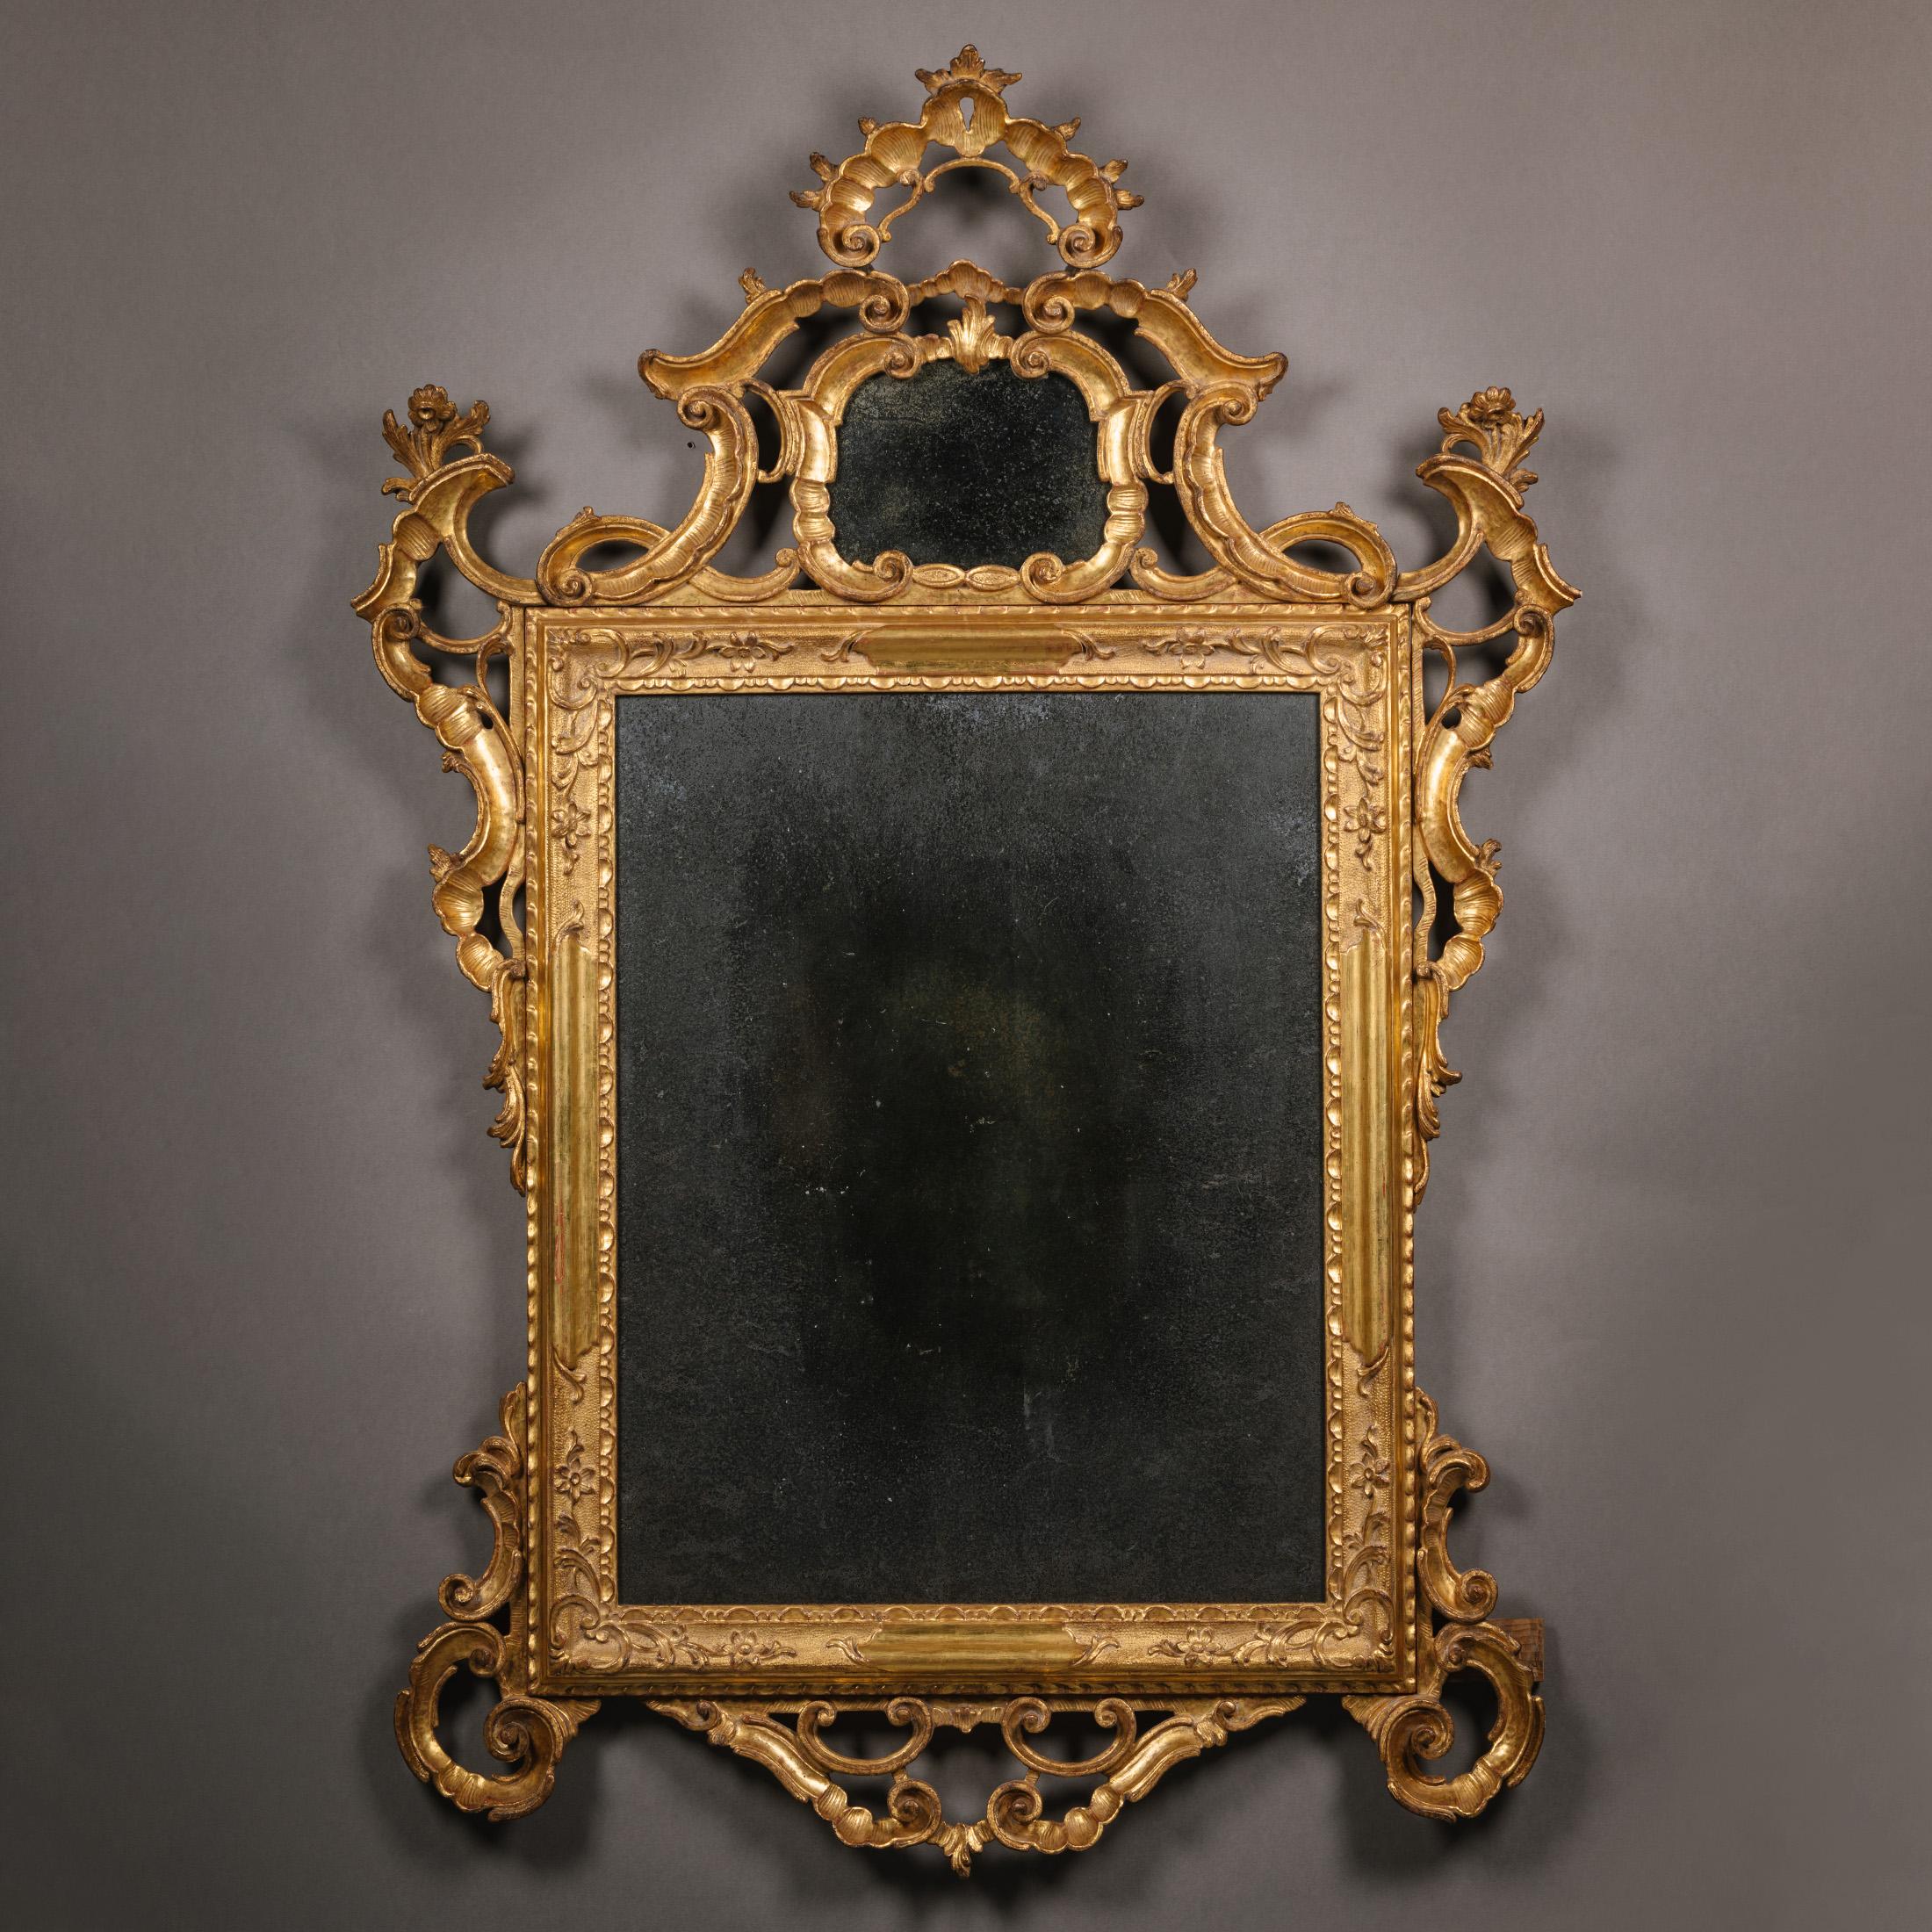 Paire de miroirs en bois sculpté rococo vénitien.  

Ces miroirs présentent des crêtes élaborées et ajourées, surmontées d'une couronne en forme de coquille au-dessus d'une plaque en forme de cartouche. Les plaques de miroir rectangulaires sont